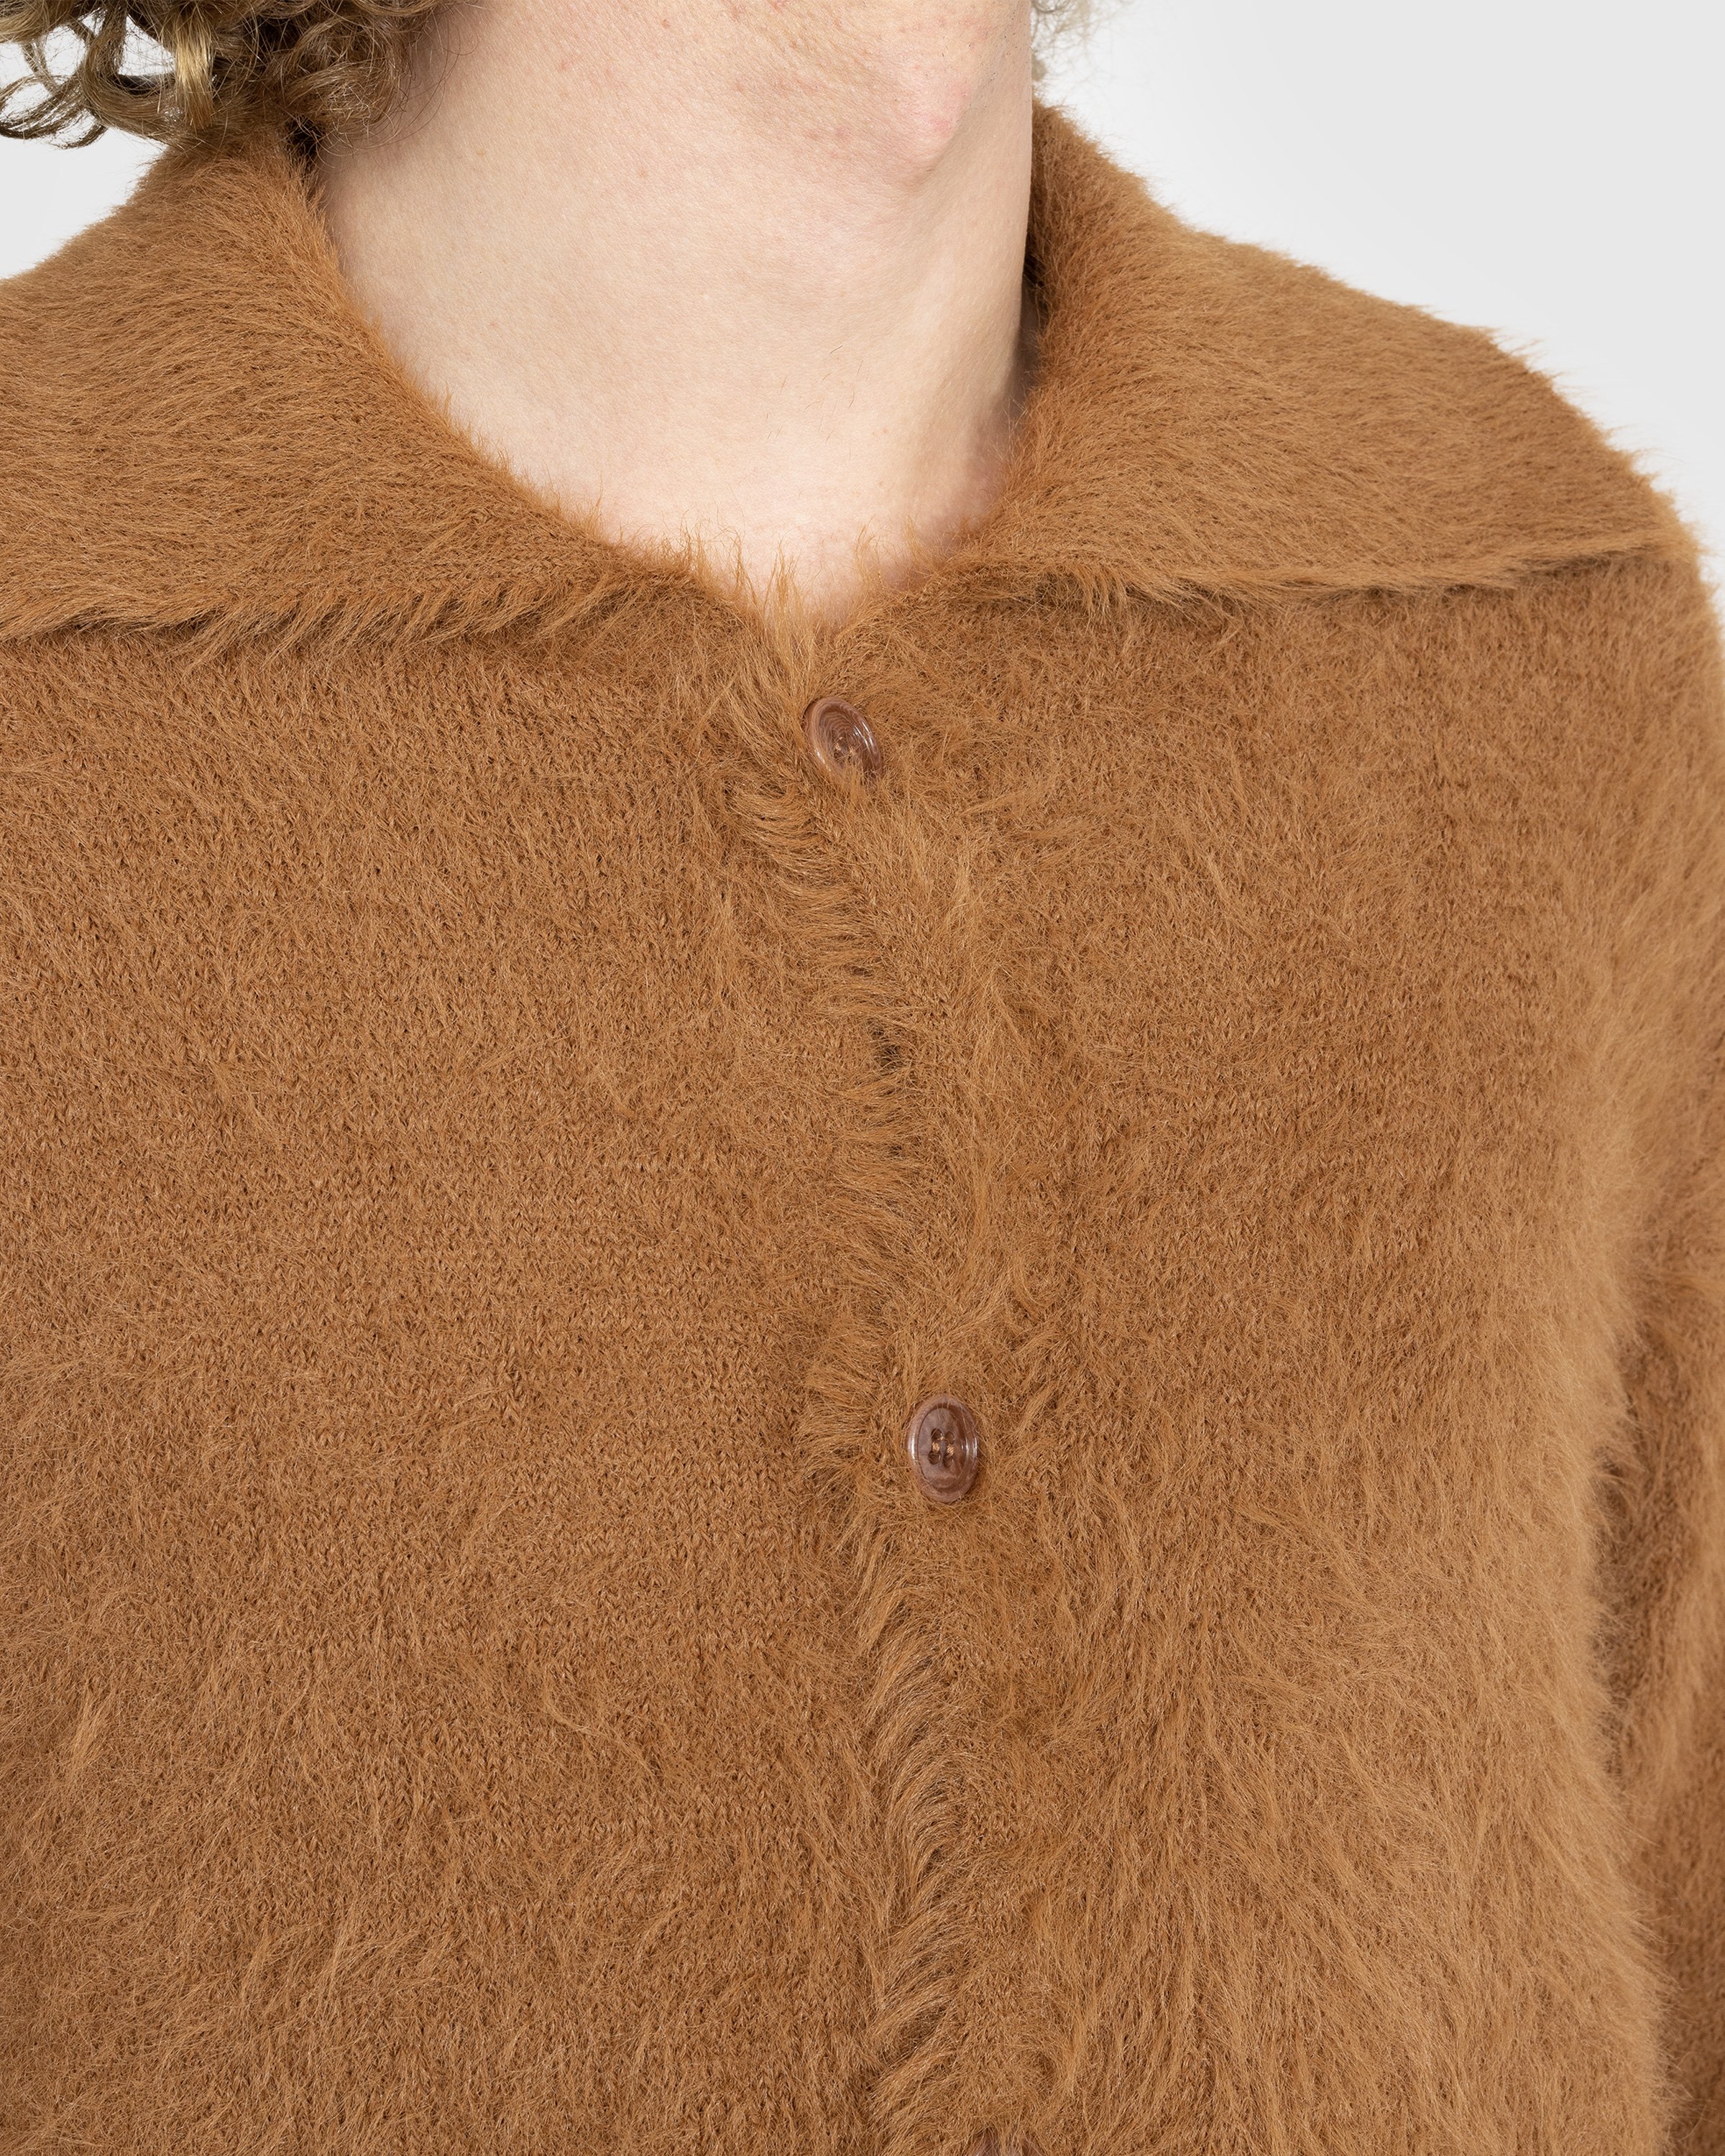 Dries van Noten - Merdan Knit Dark Camel - Clothing - Brown - Image 4